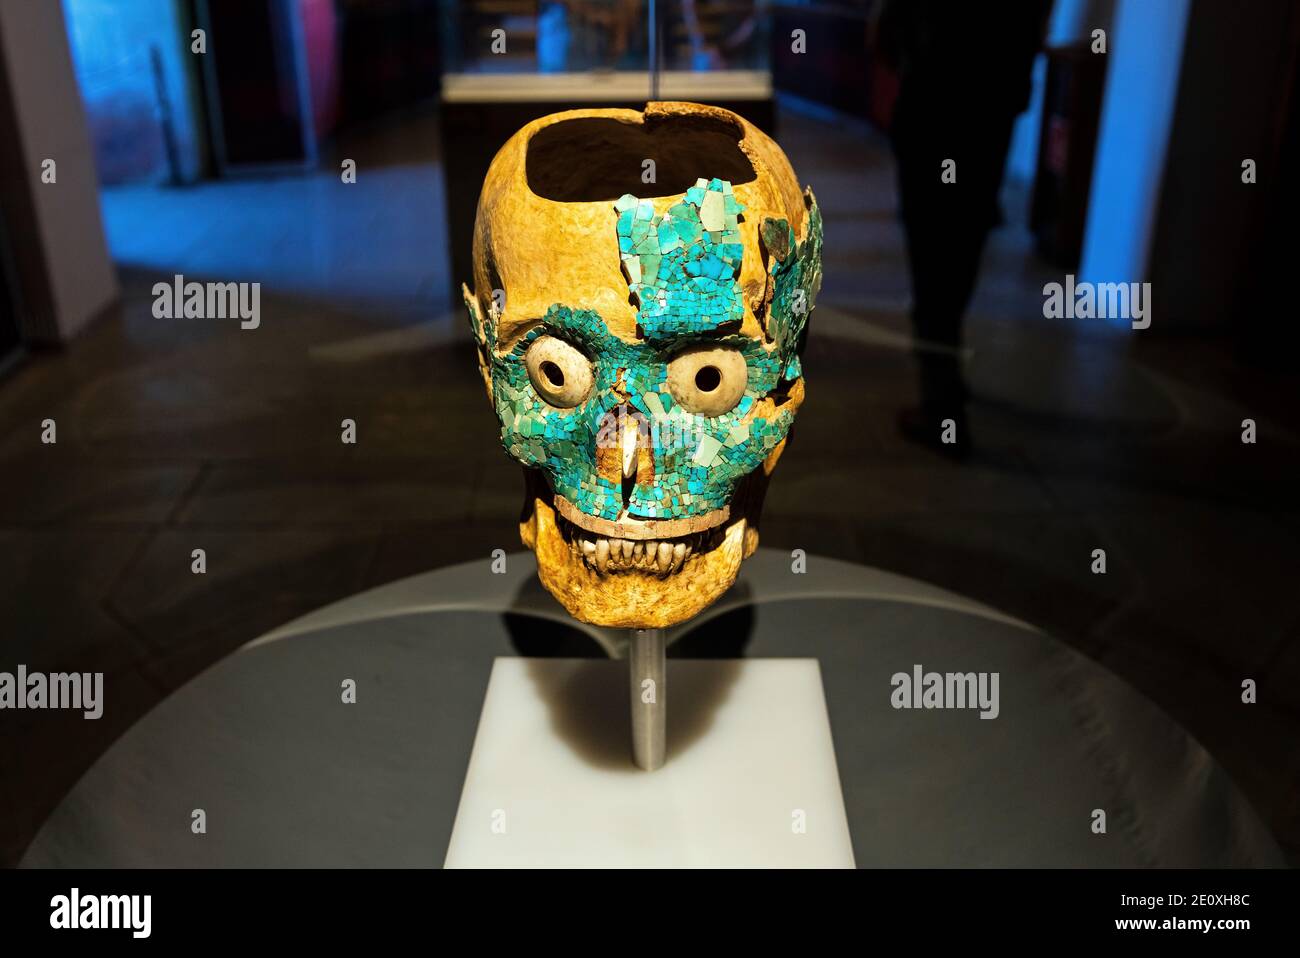 Cráneo con máscara de muerte incrustada de color turquesa de la civilización mixteca zapoteca encontrada en la tumba 7 en Monte Albán, Oaxaca, México. Foto de stock